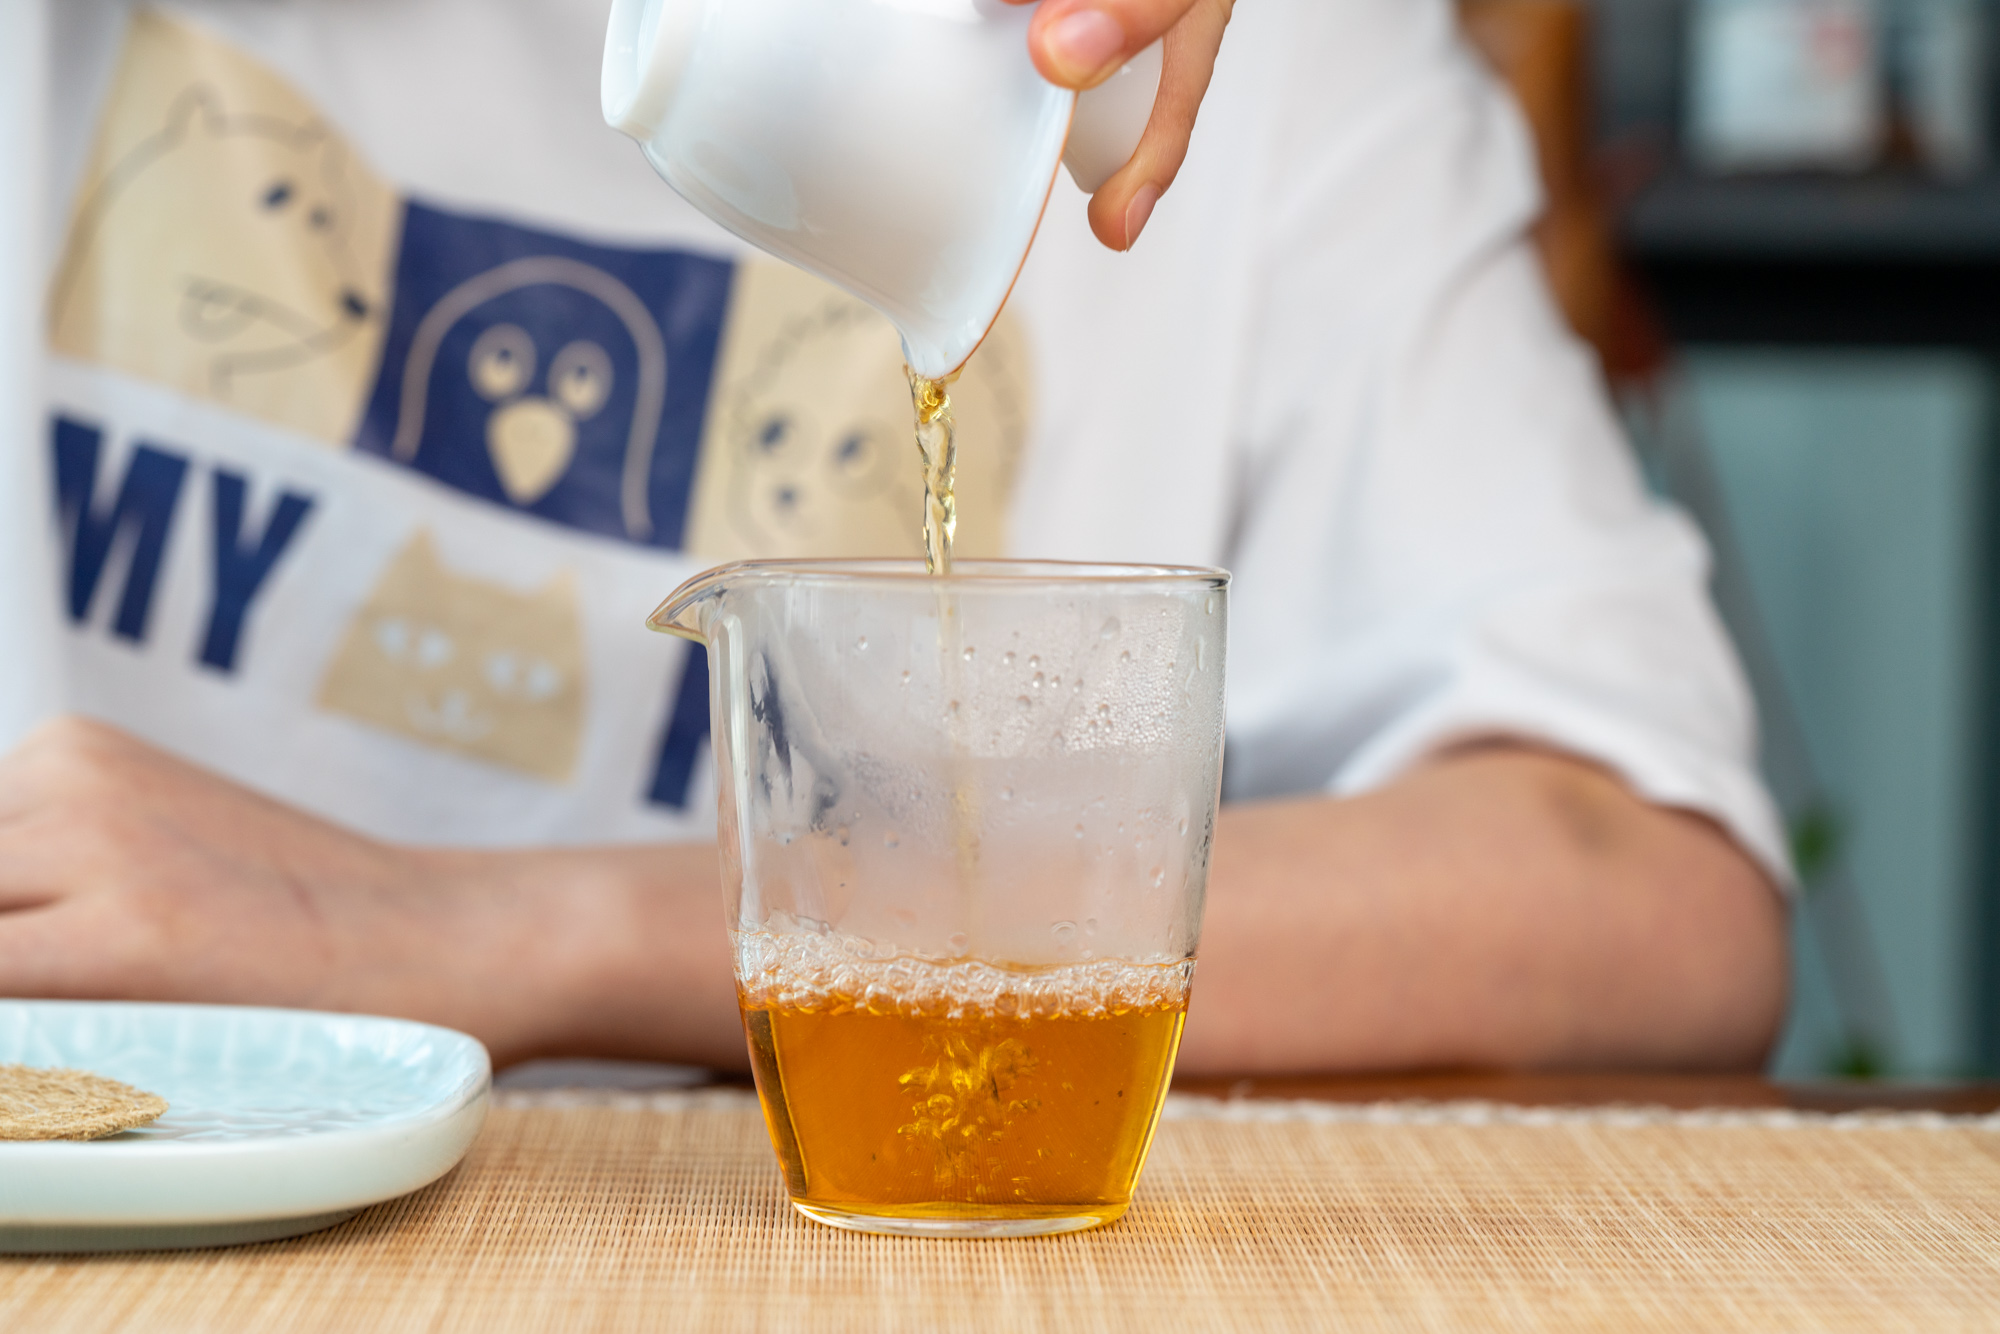 小喜年：红茶篇 | 冲泡茶叶的坏习惯，你有吗？